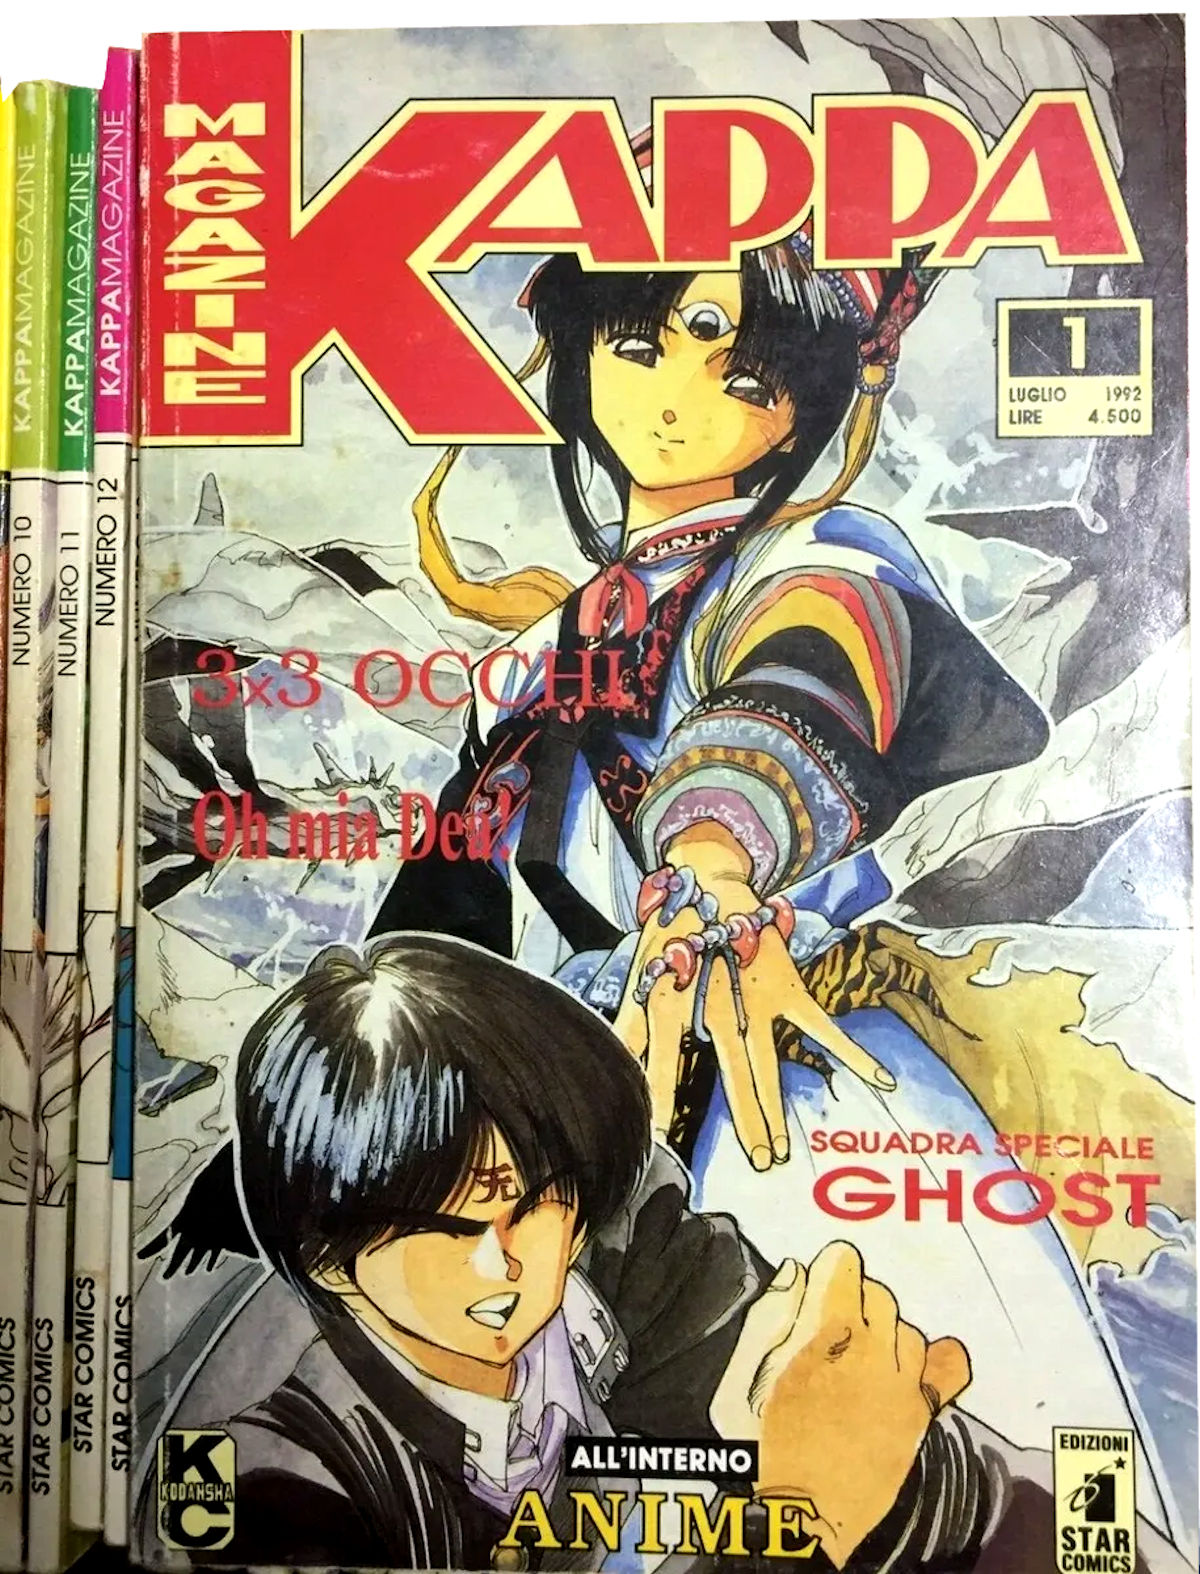 20 anni di Kappa Boys. L’Italia e l’invasione dei Manga!